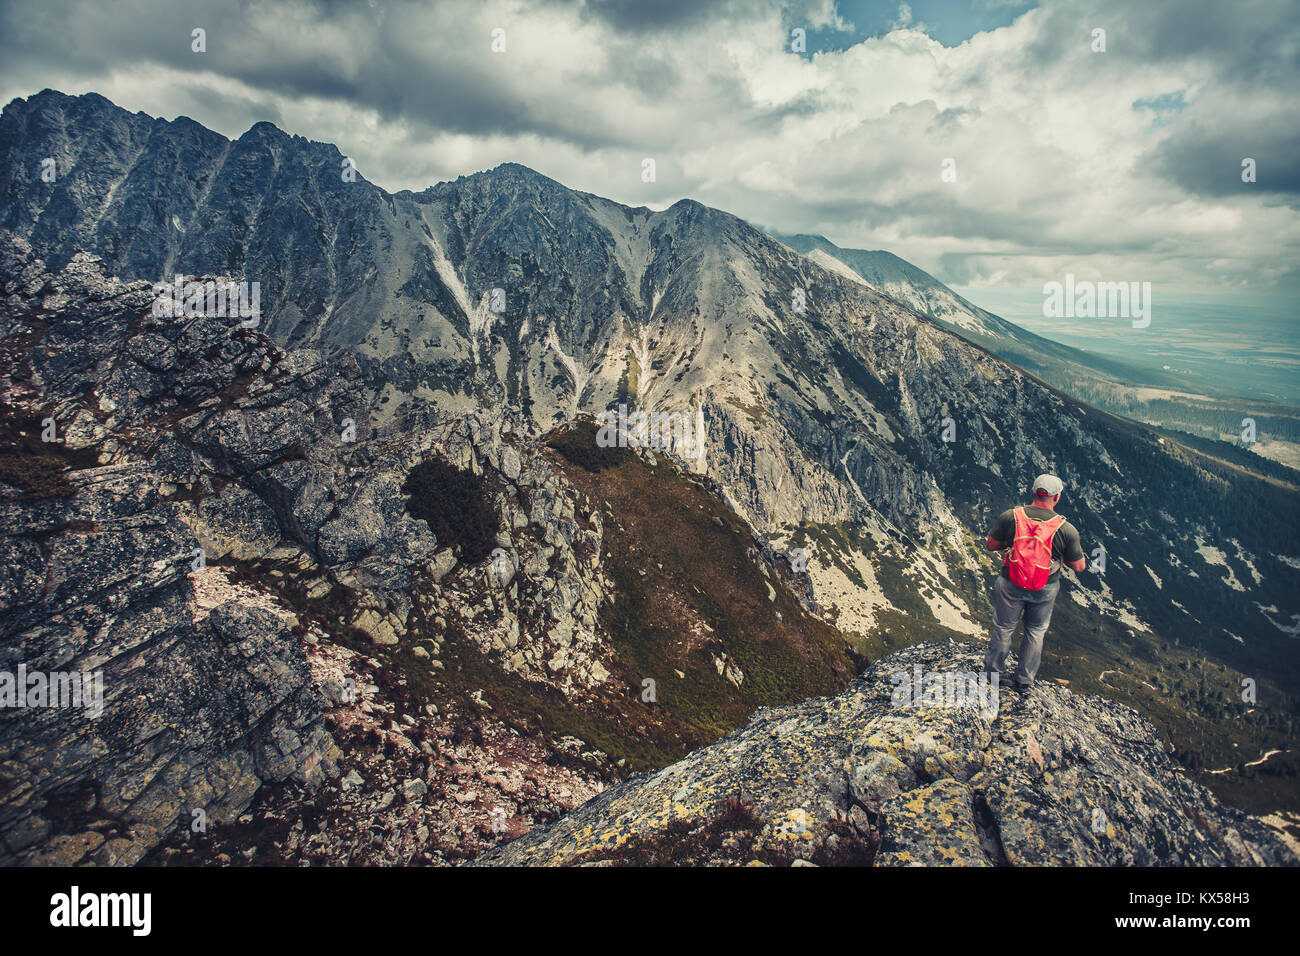 Ein Wanderer steht am Rande des Abgrunds in den Bergen der Hohen Tatra, Slowakei. Outdoor extreme Aktivität. Unvergesslichen herrlichen Panoramablick. Stockfoto